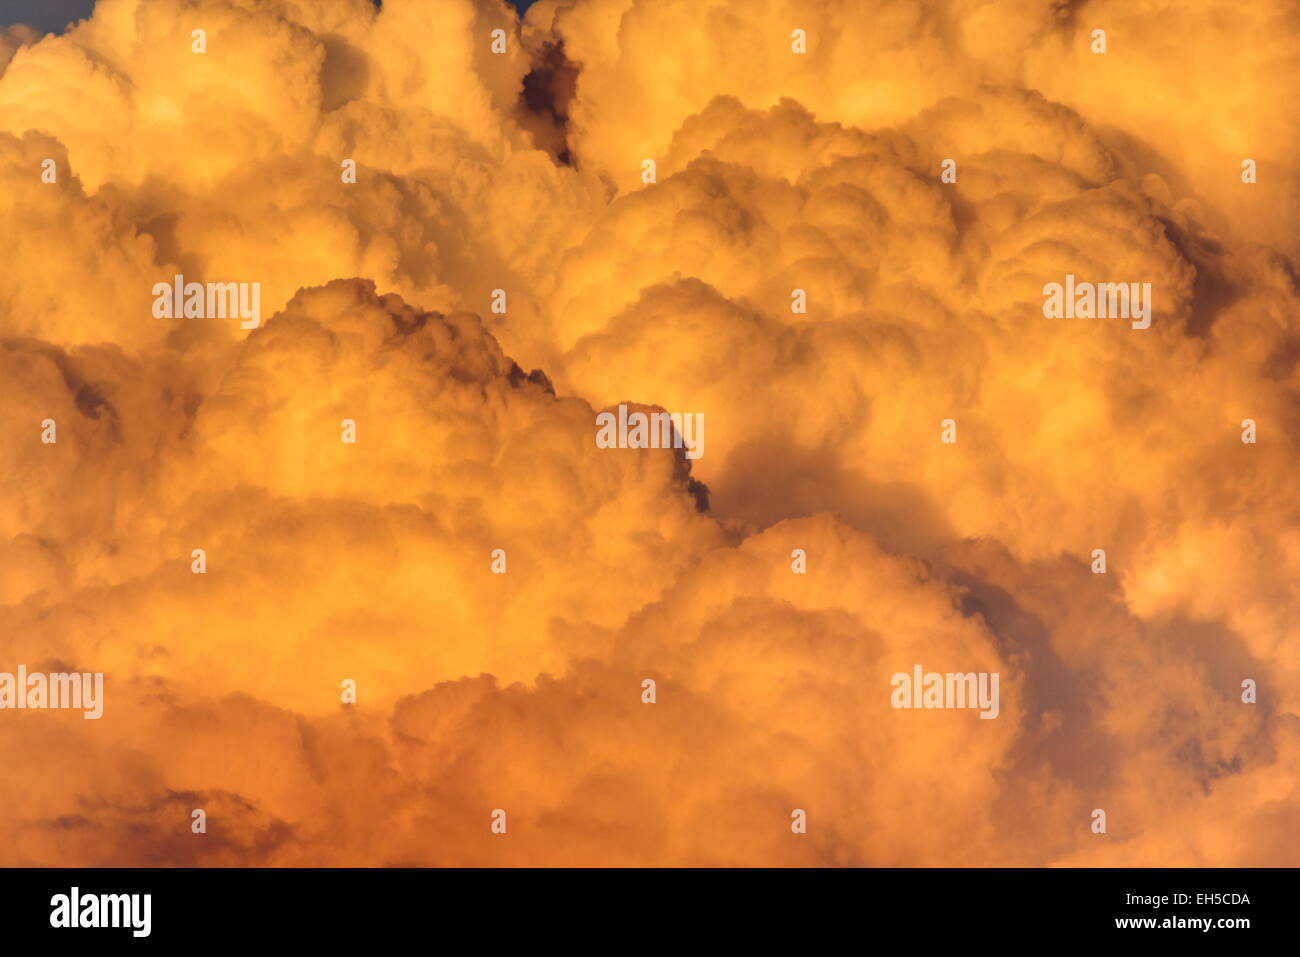 Détail de nuages orange illuminée par le soleil chaud Banque D'Images